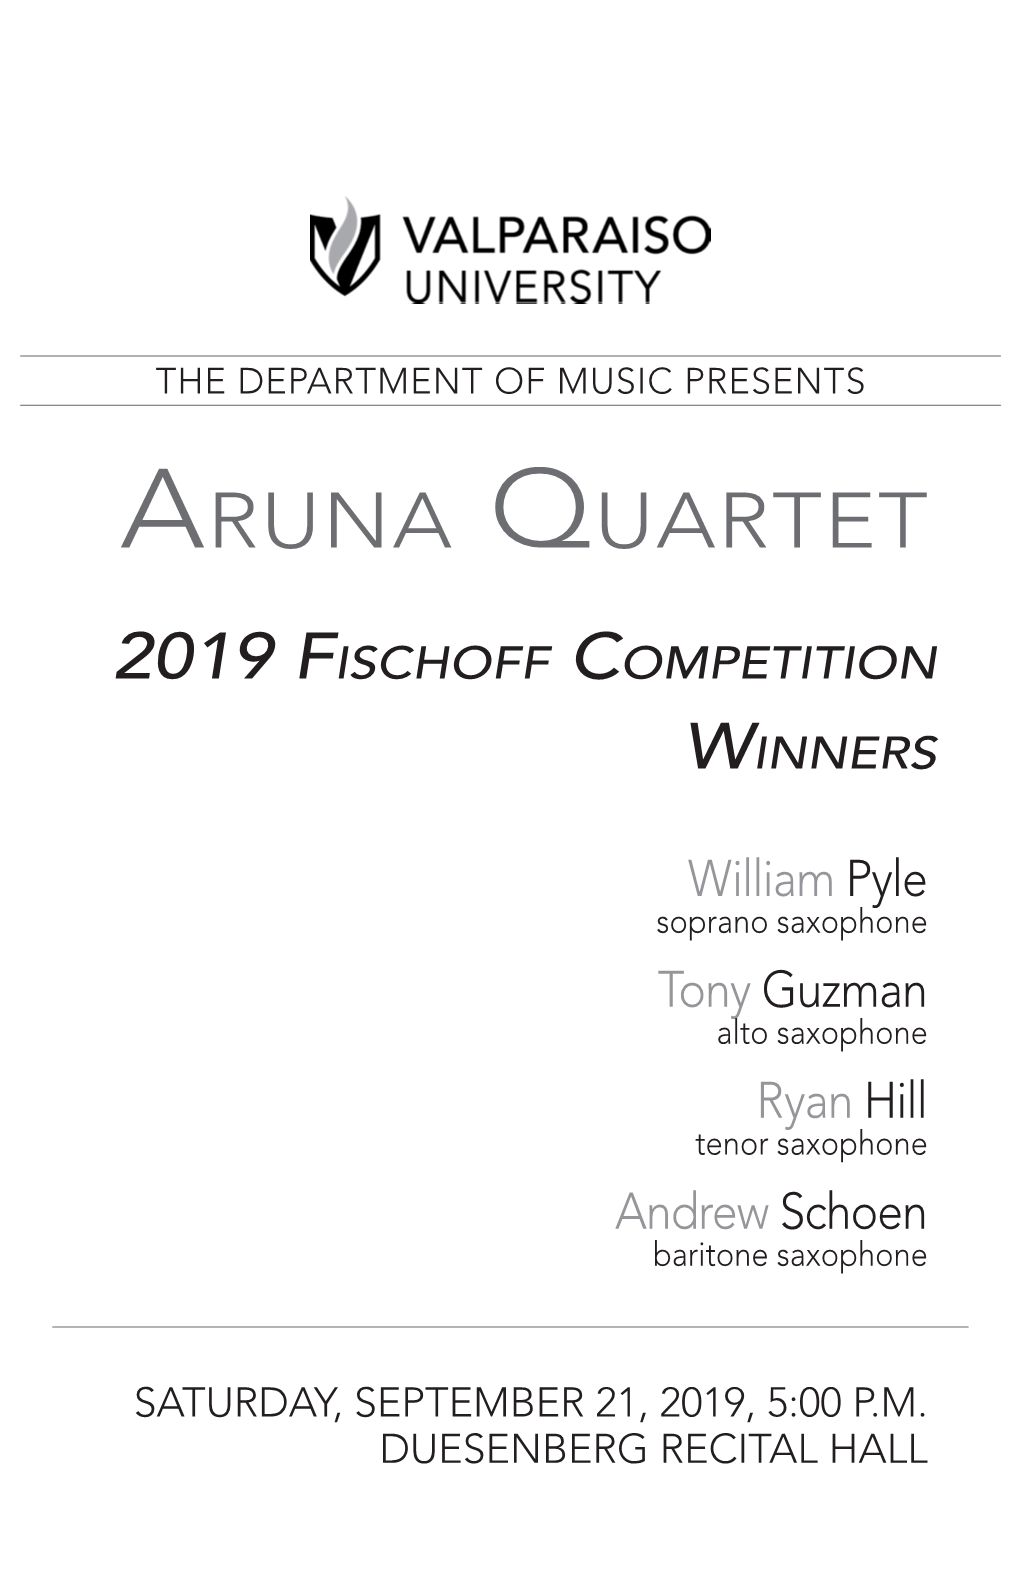 Aruna Quartet